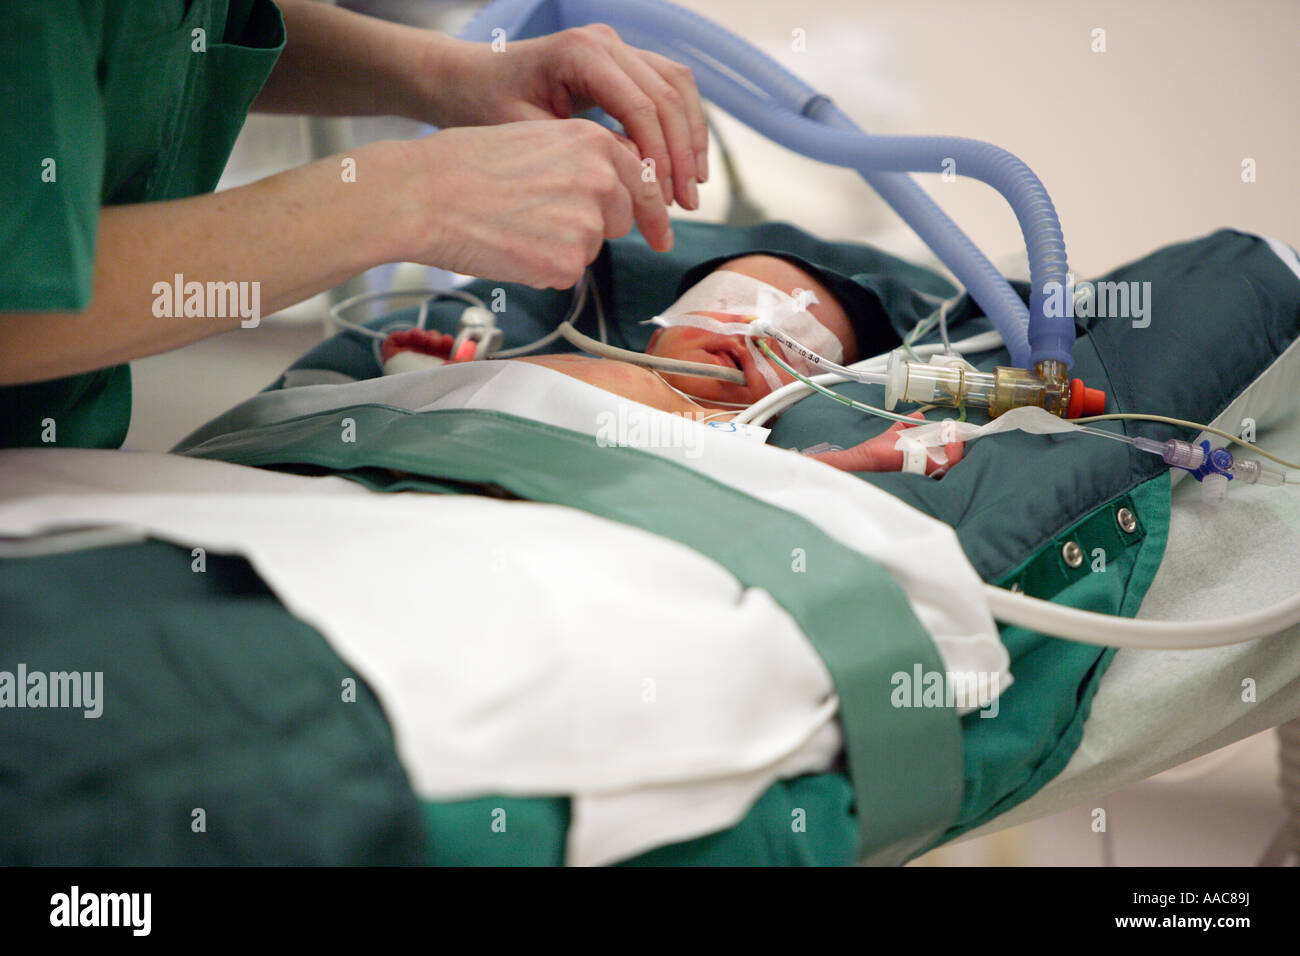 Altona centre hospitalier pour enfants Un bébé sur la table d'opération le patient est de 14 jours Banque D'Images